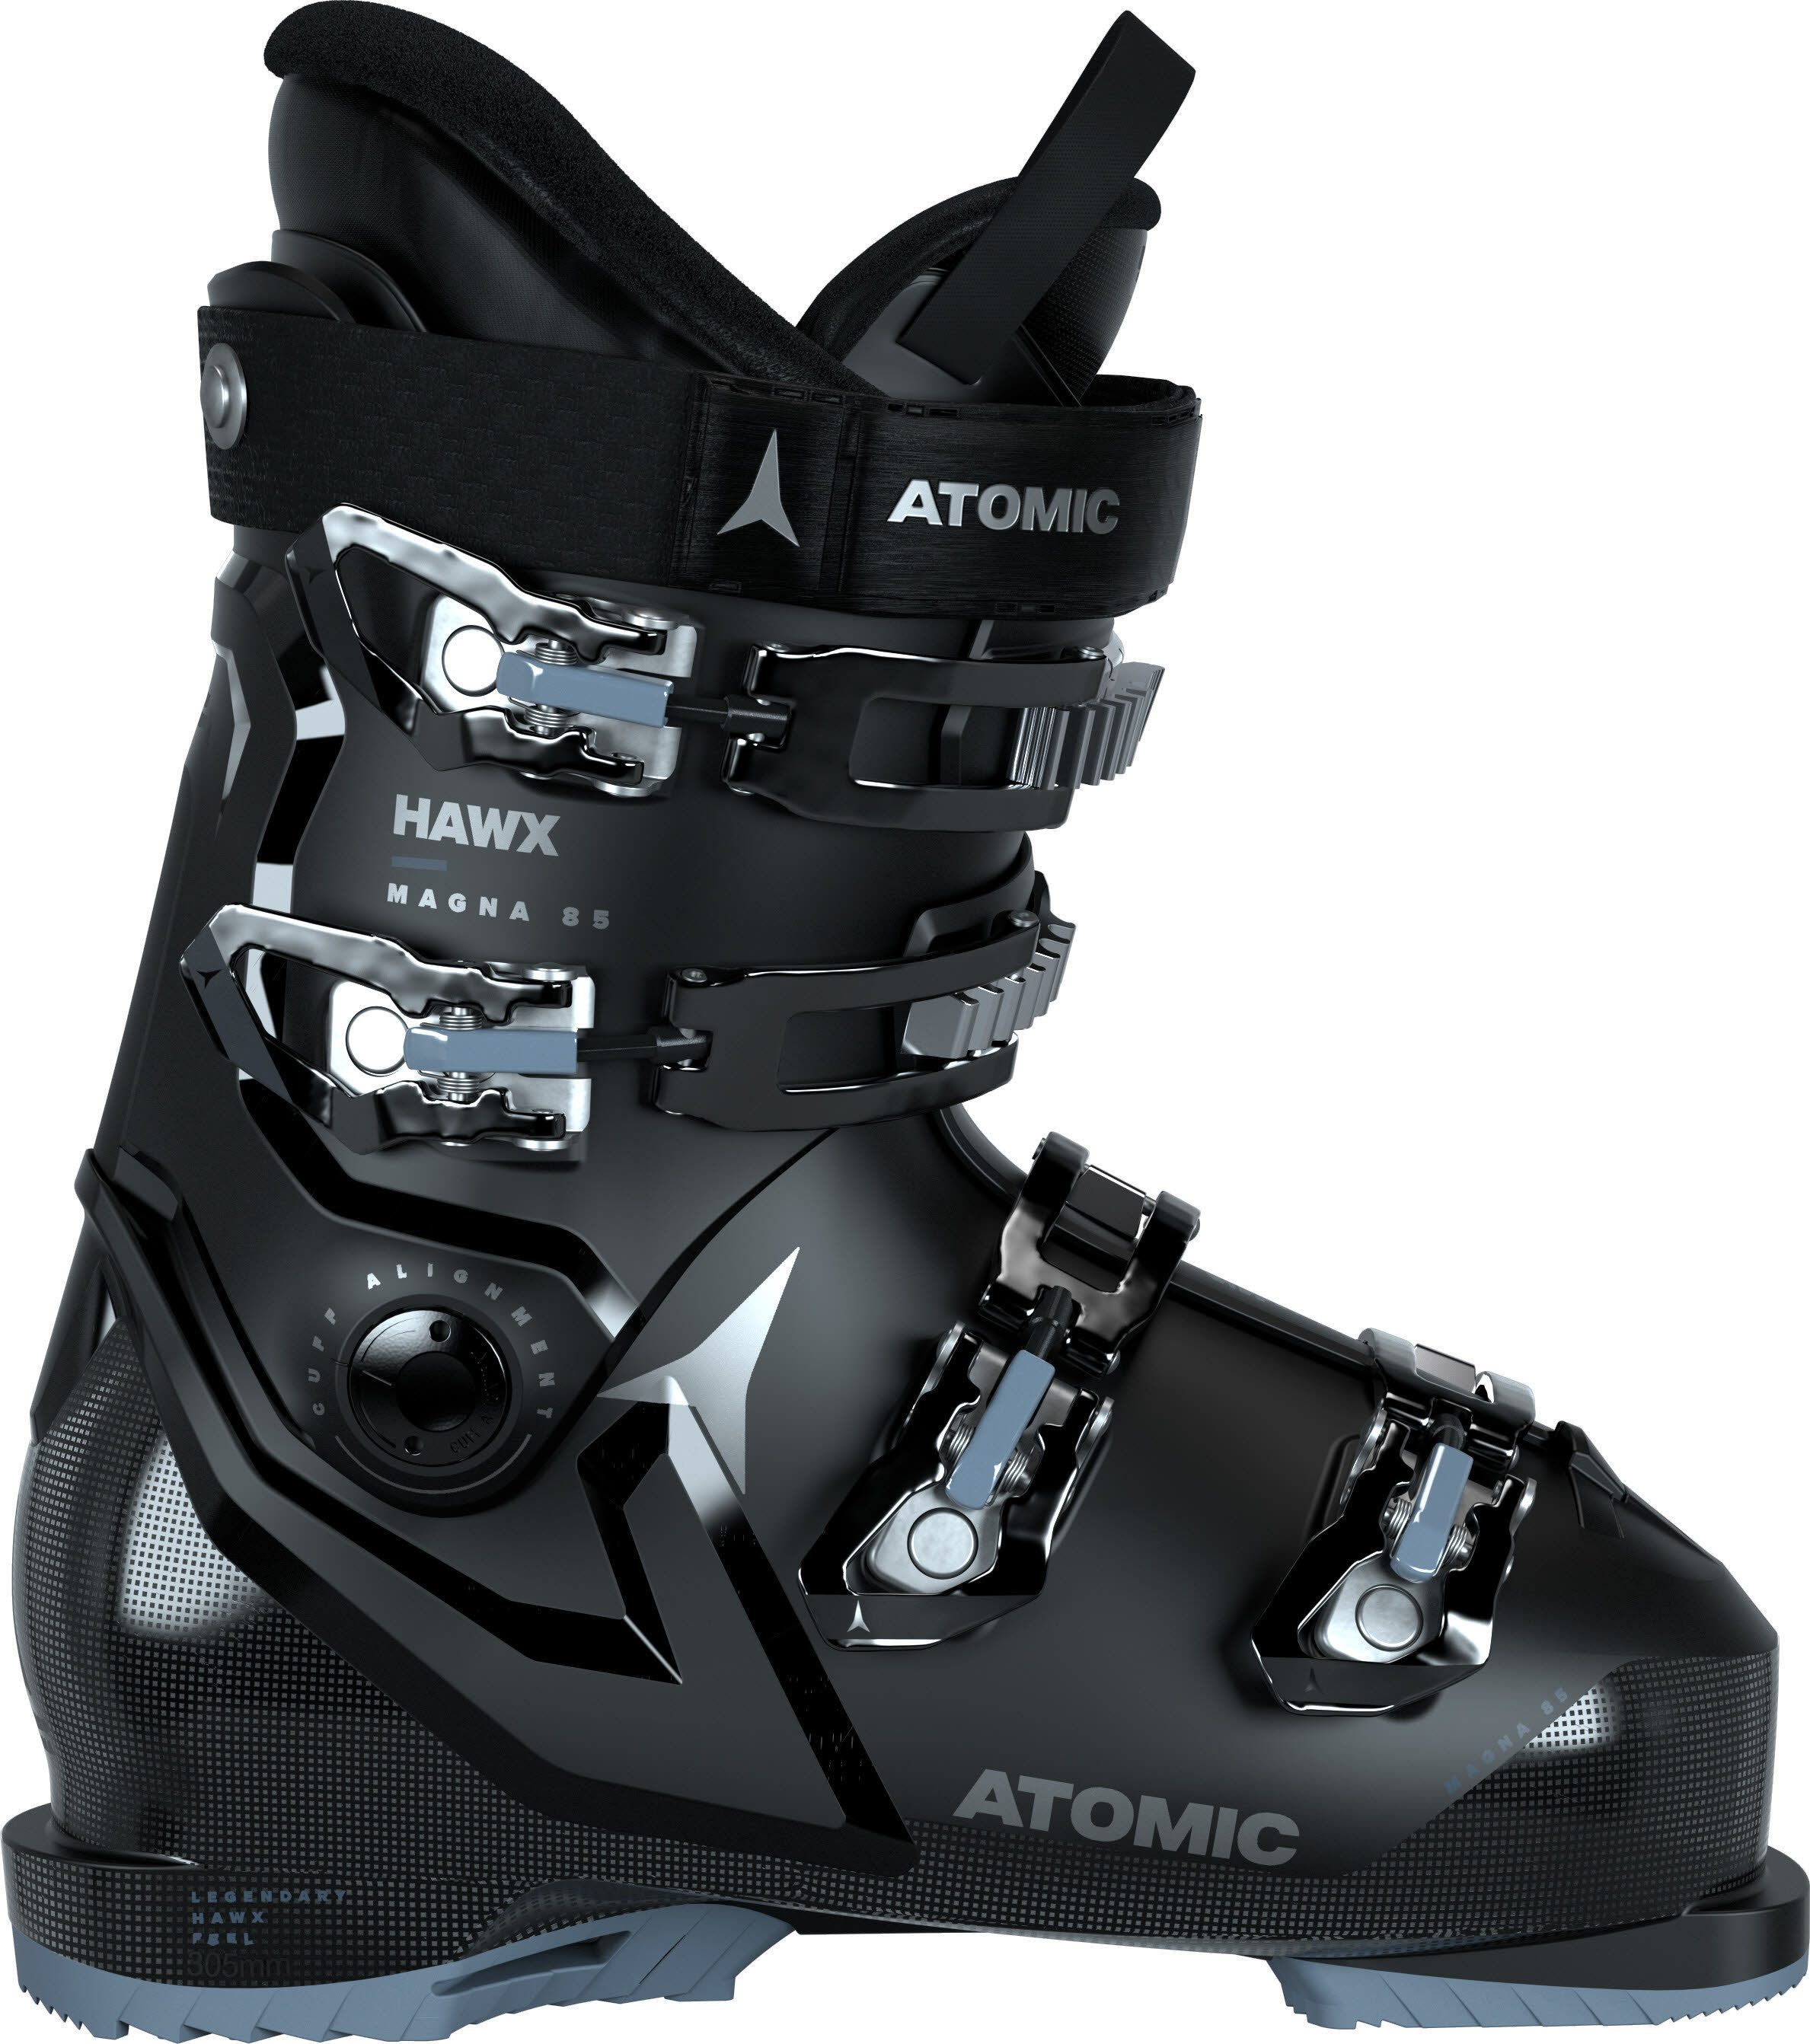 Atomic HAWX MAGNA 85 Damen Skischuhe Ski Alpin Wintersport 23/24 schwarz